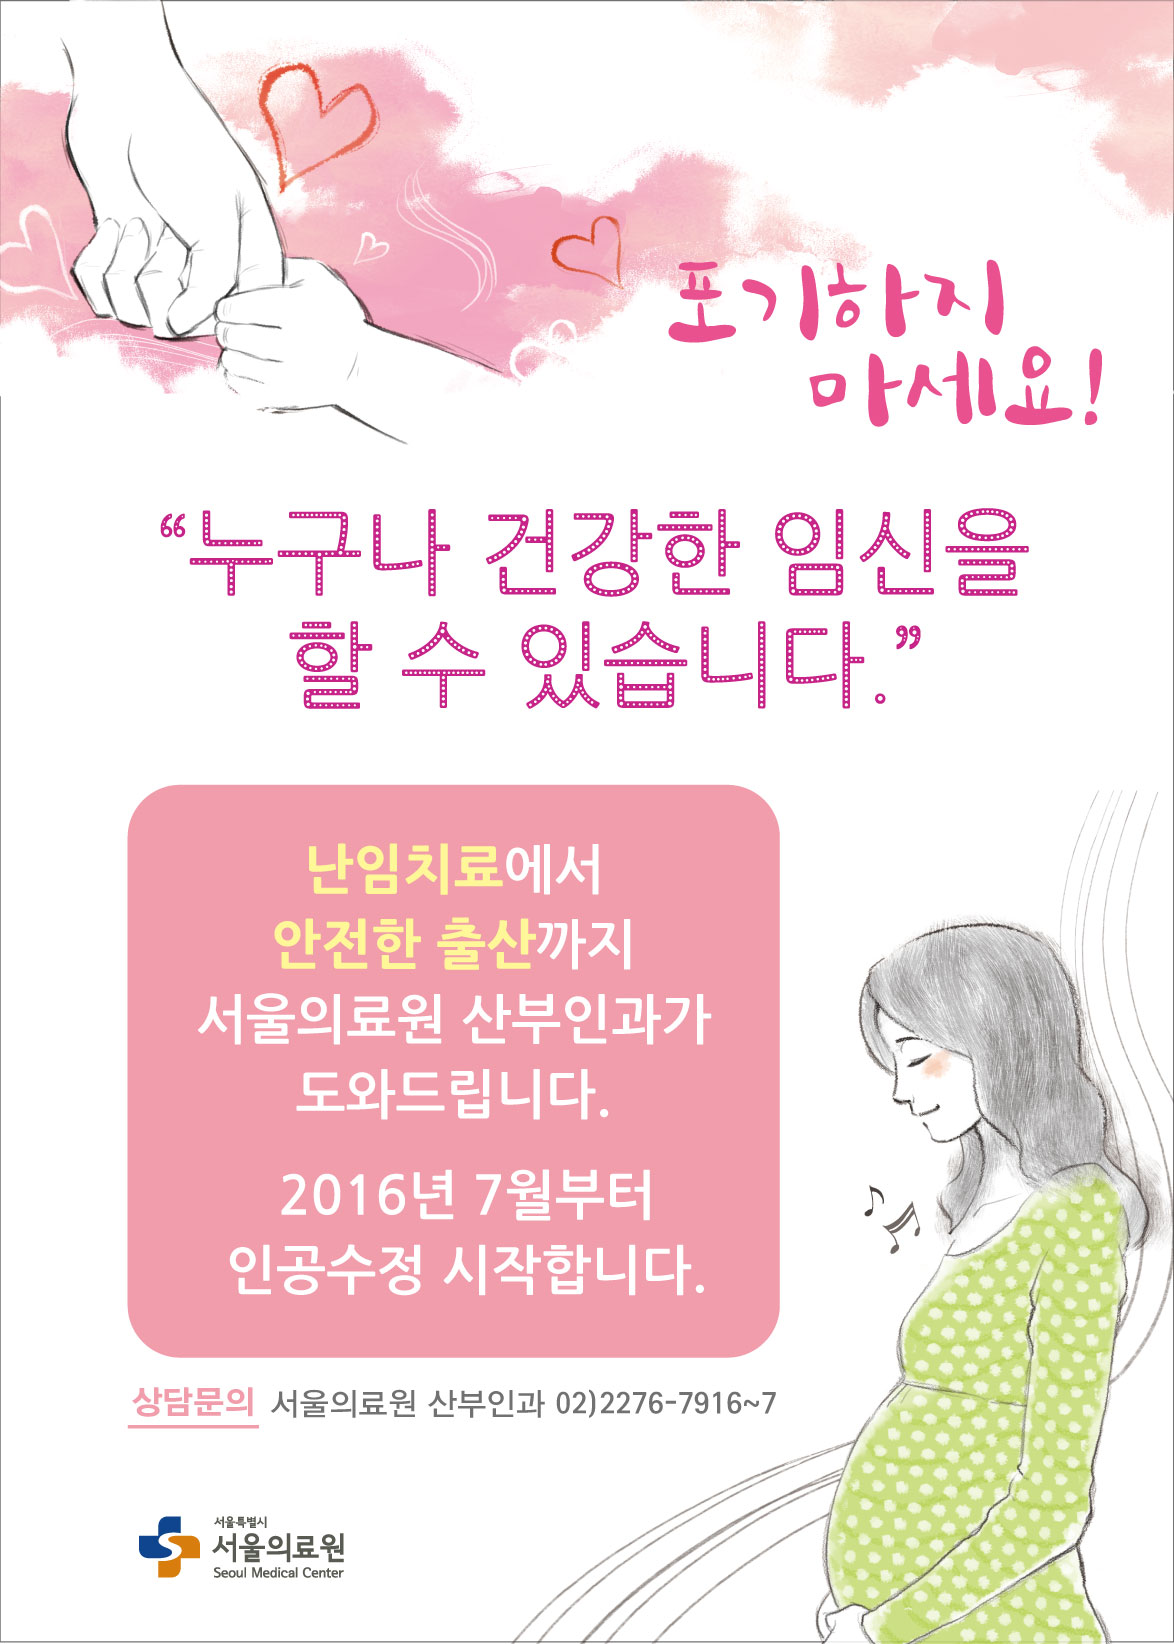 포기하지 마세요! 누구나 건강한 임신을 할 수있습니다. 난임치료에서 안전한 출산까지 서울의료원 산부인과가 도와드립니다. 2016년 7월부터 인공수정 시작합니다. 상담문의 서울의료원 산부인과 02)2276-7916~7 서울특별시 서울의료원 seoul Medical center